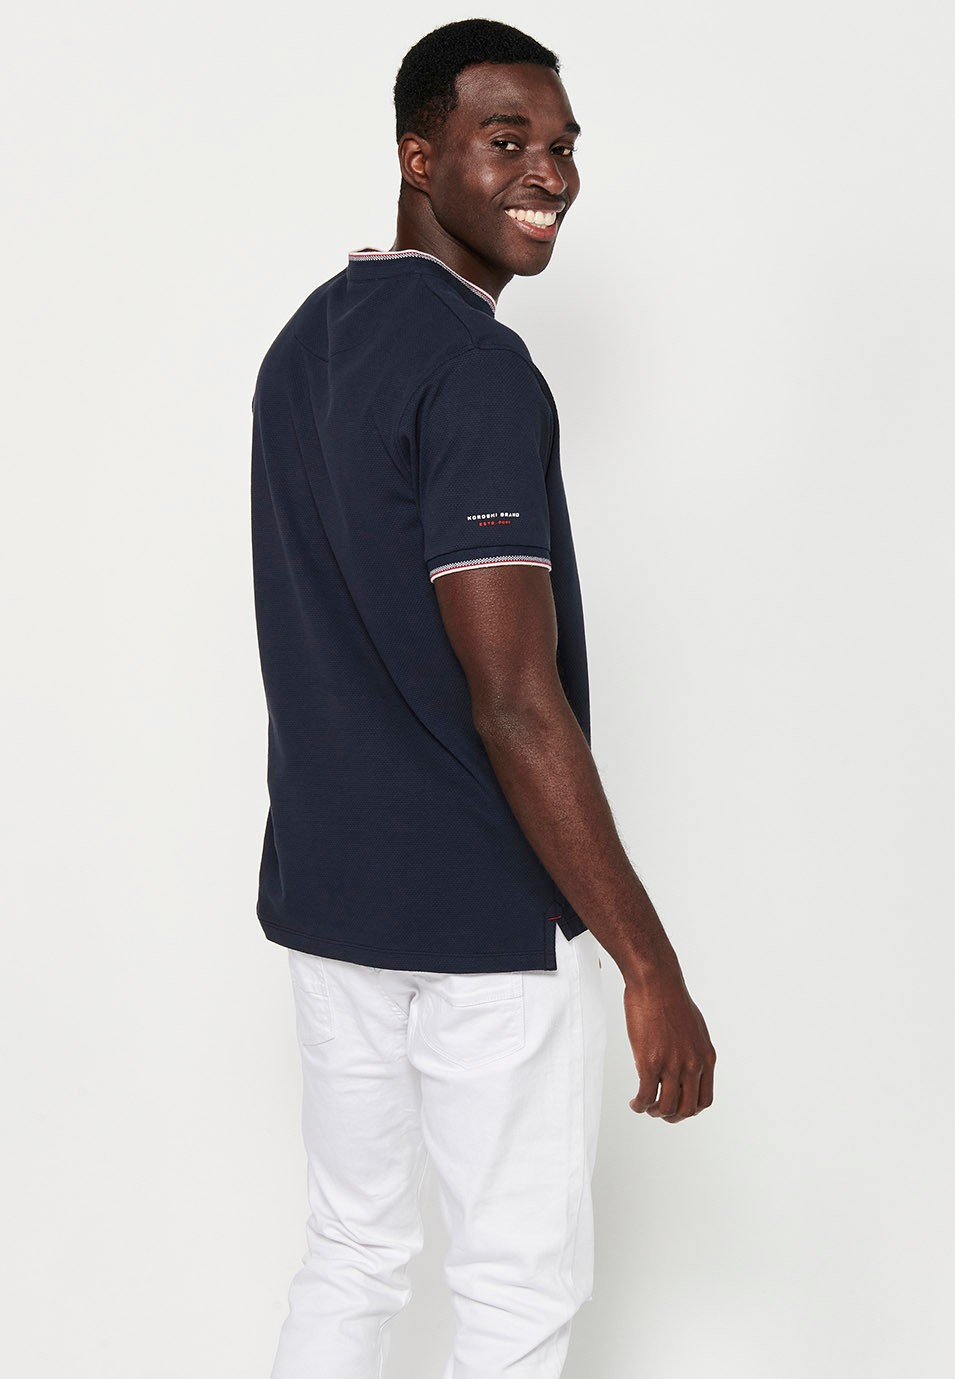 Kurzärmeliges Baumwoll-Poloshirt mit geripptem Finish, Rundhalsausschnitt, geknöpfter Öffnung und strukturierten Seitenschlitzen in der Farbe Marineblau für Herren 6